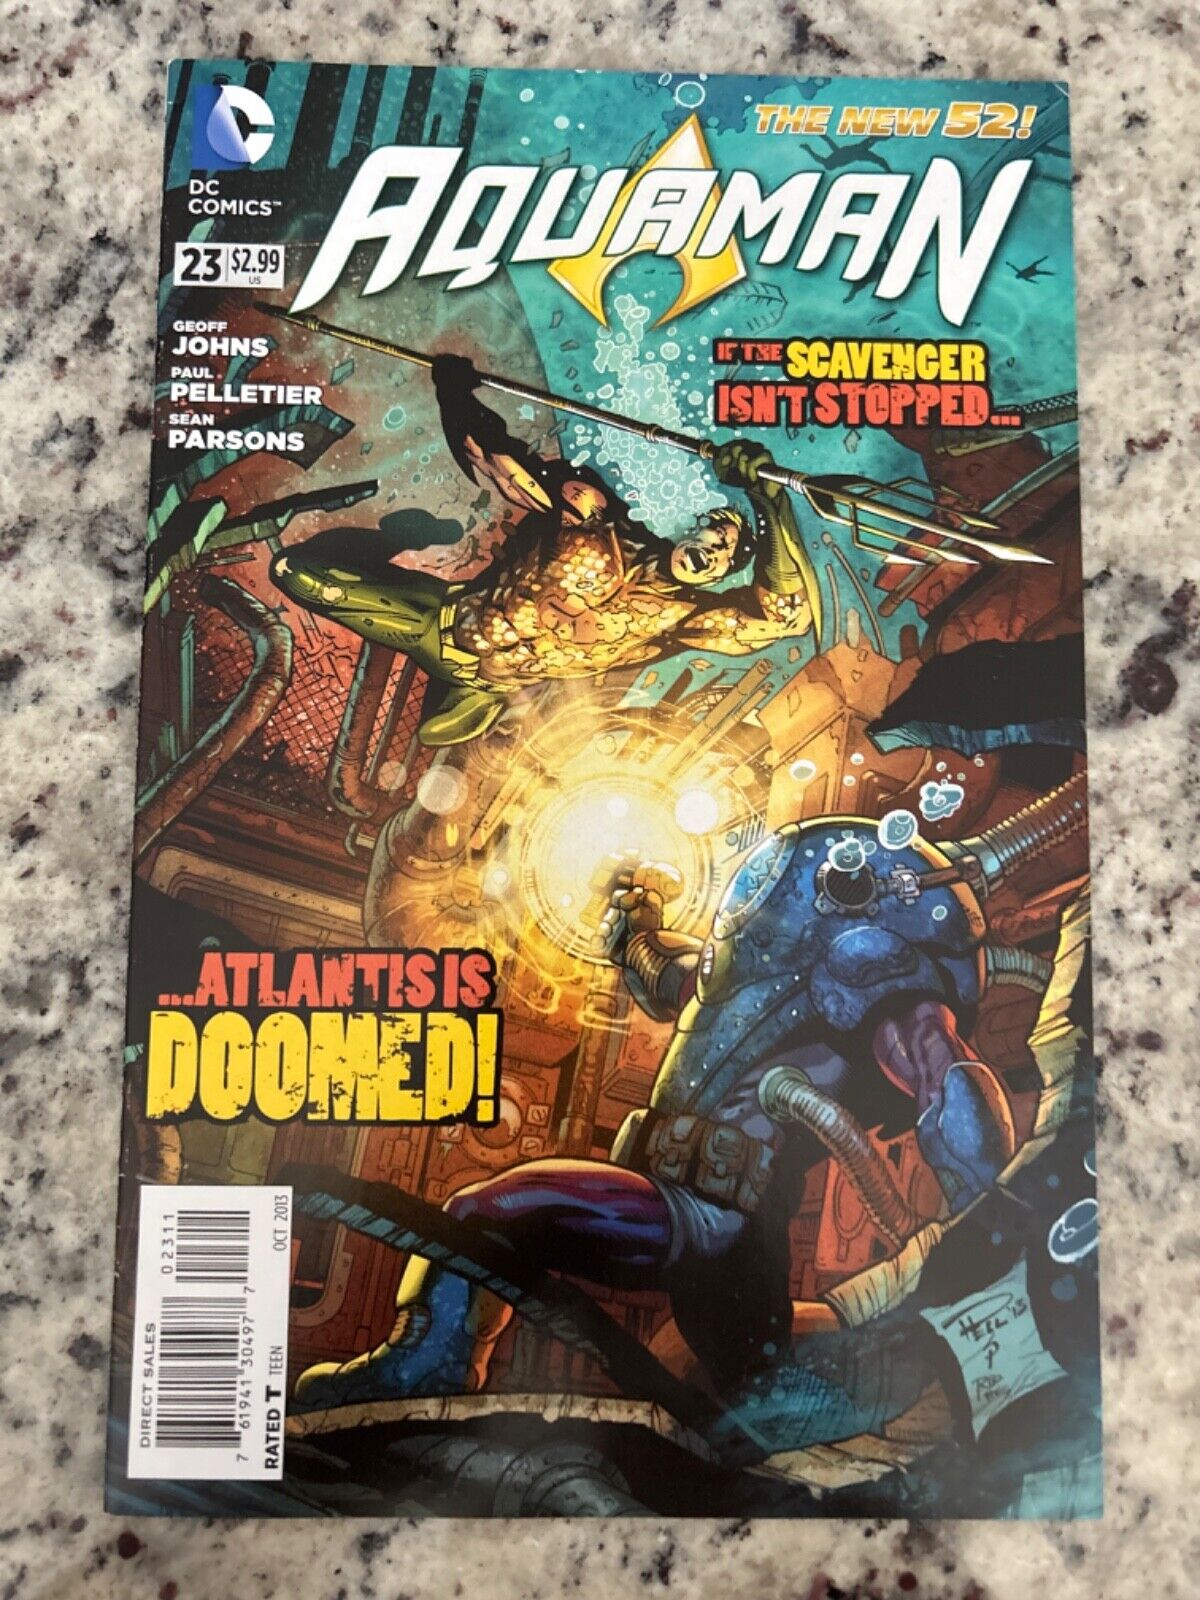 Aquaman #23 Vol. 7 (DC, 2013) vf